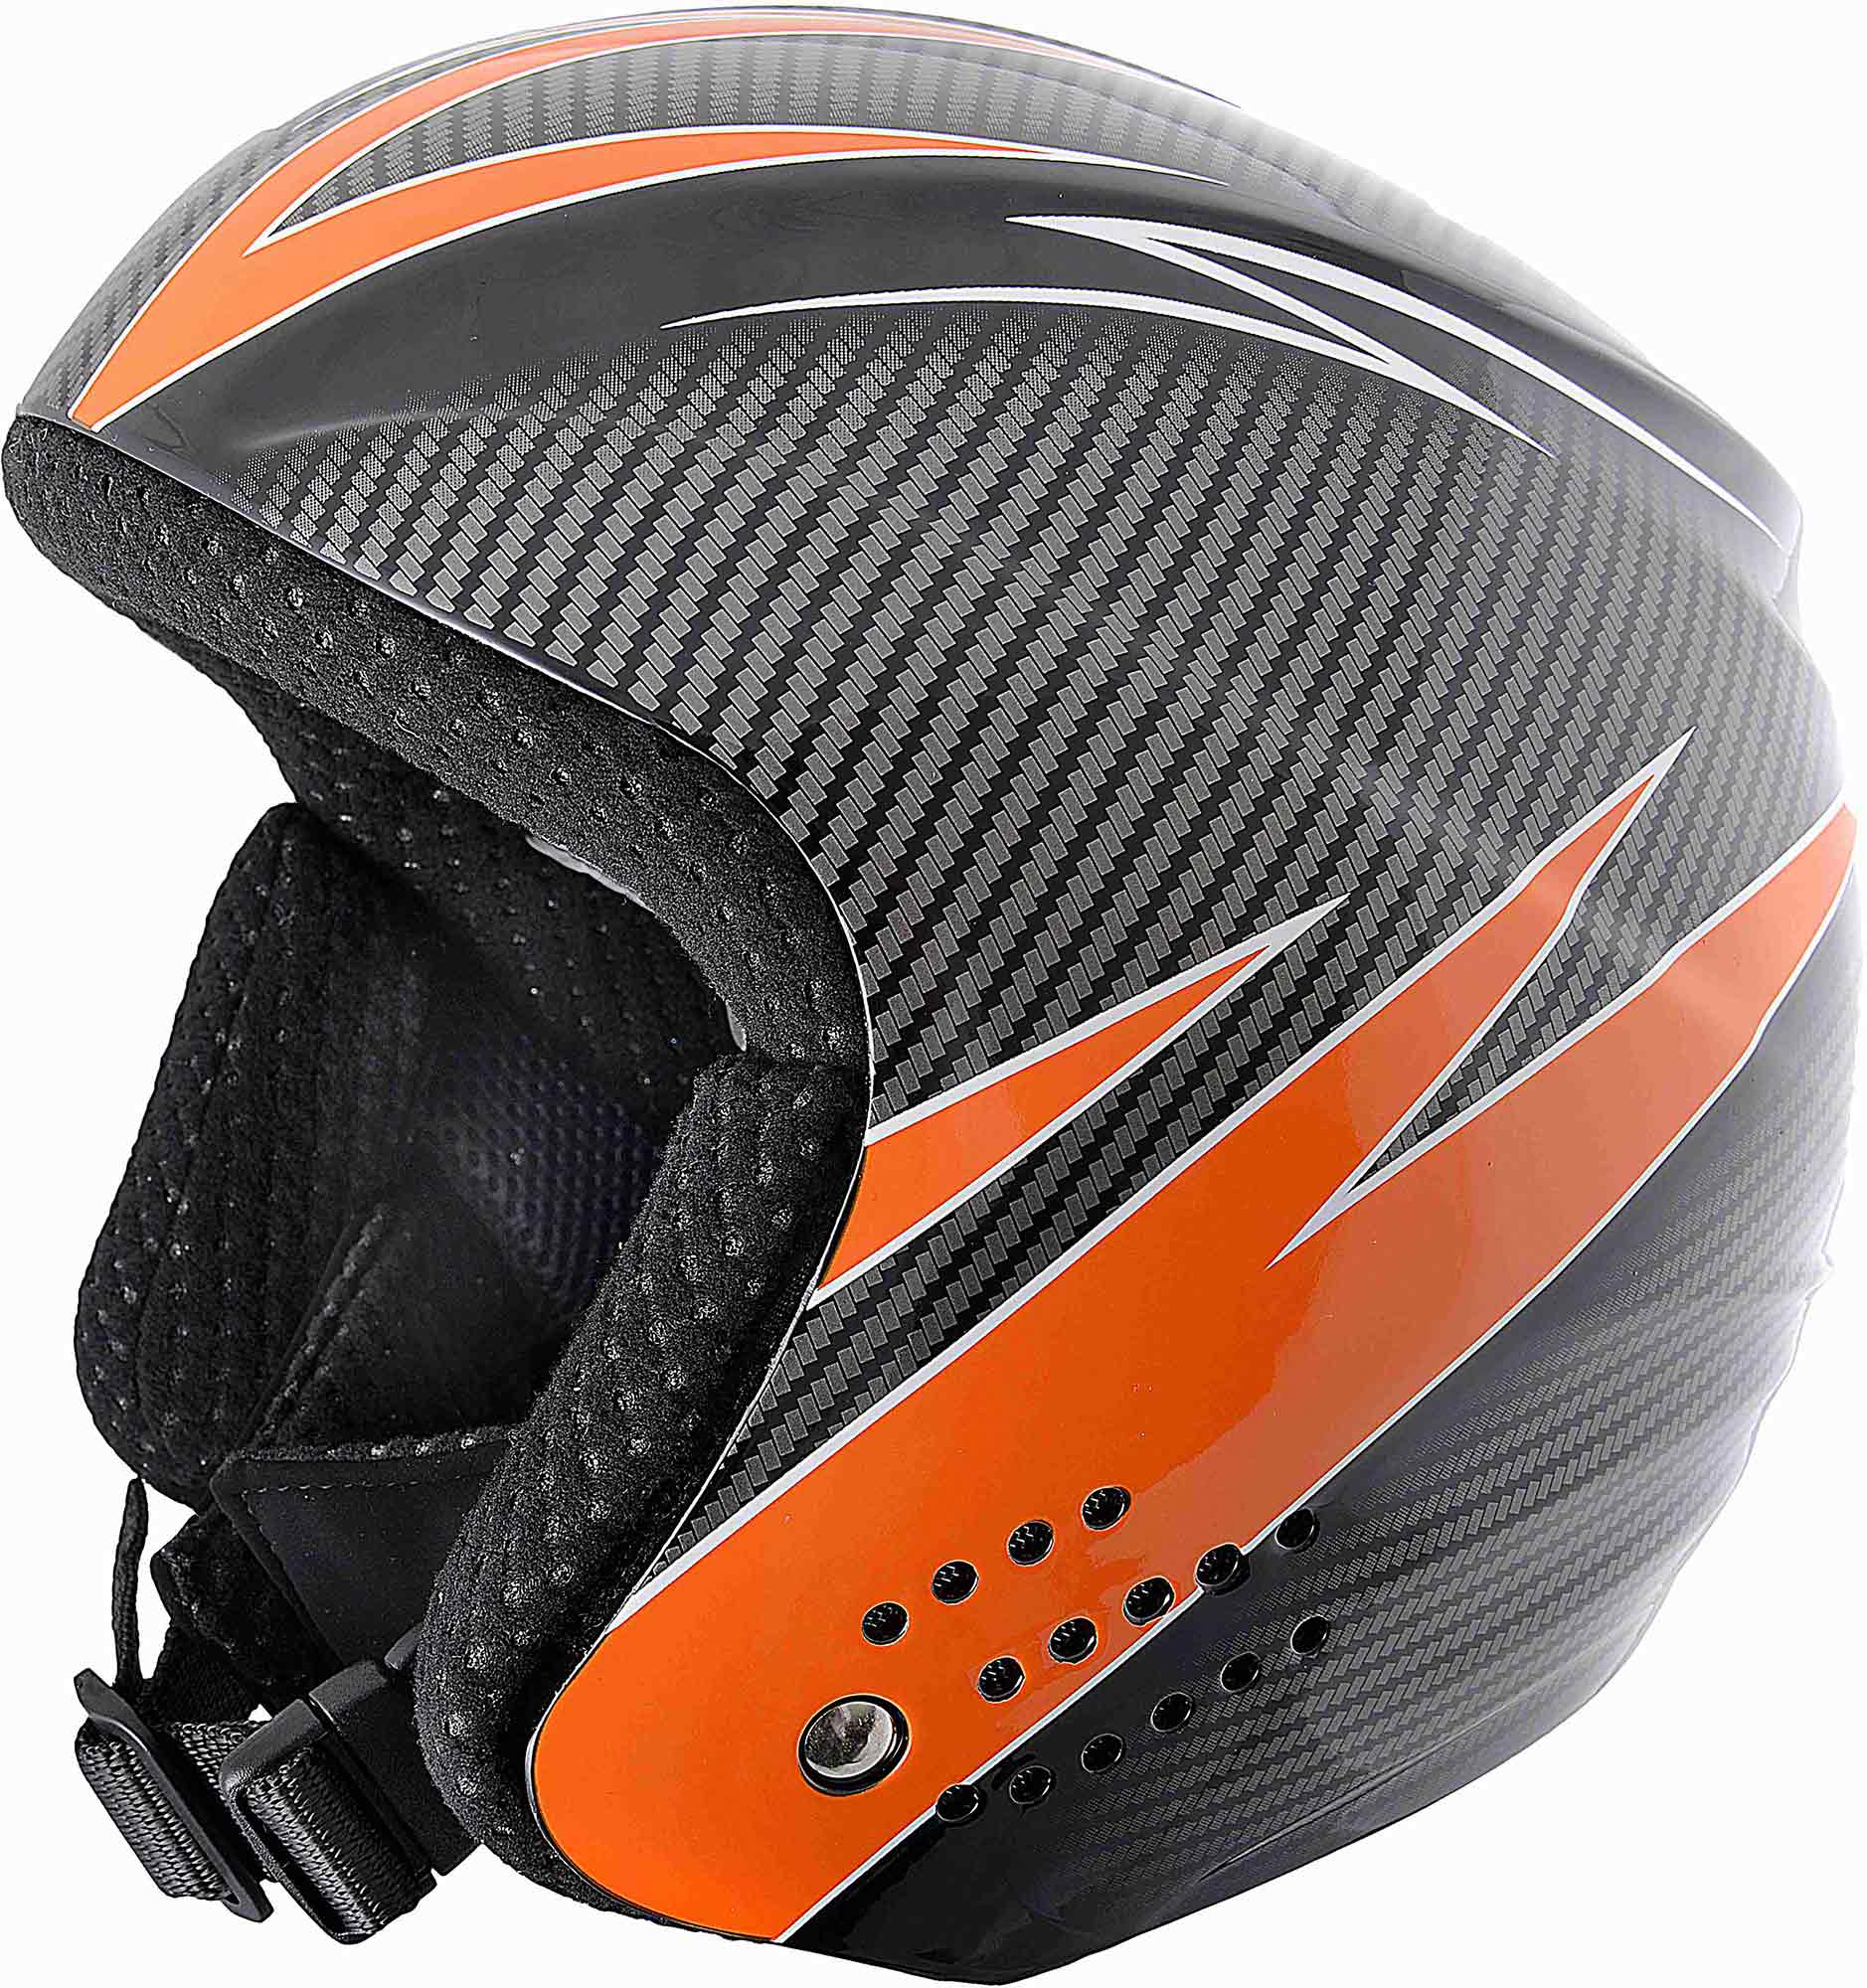 Jr. Skiing Helmet